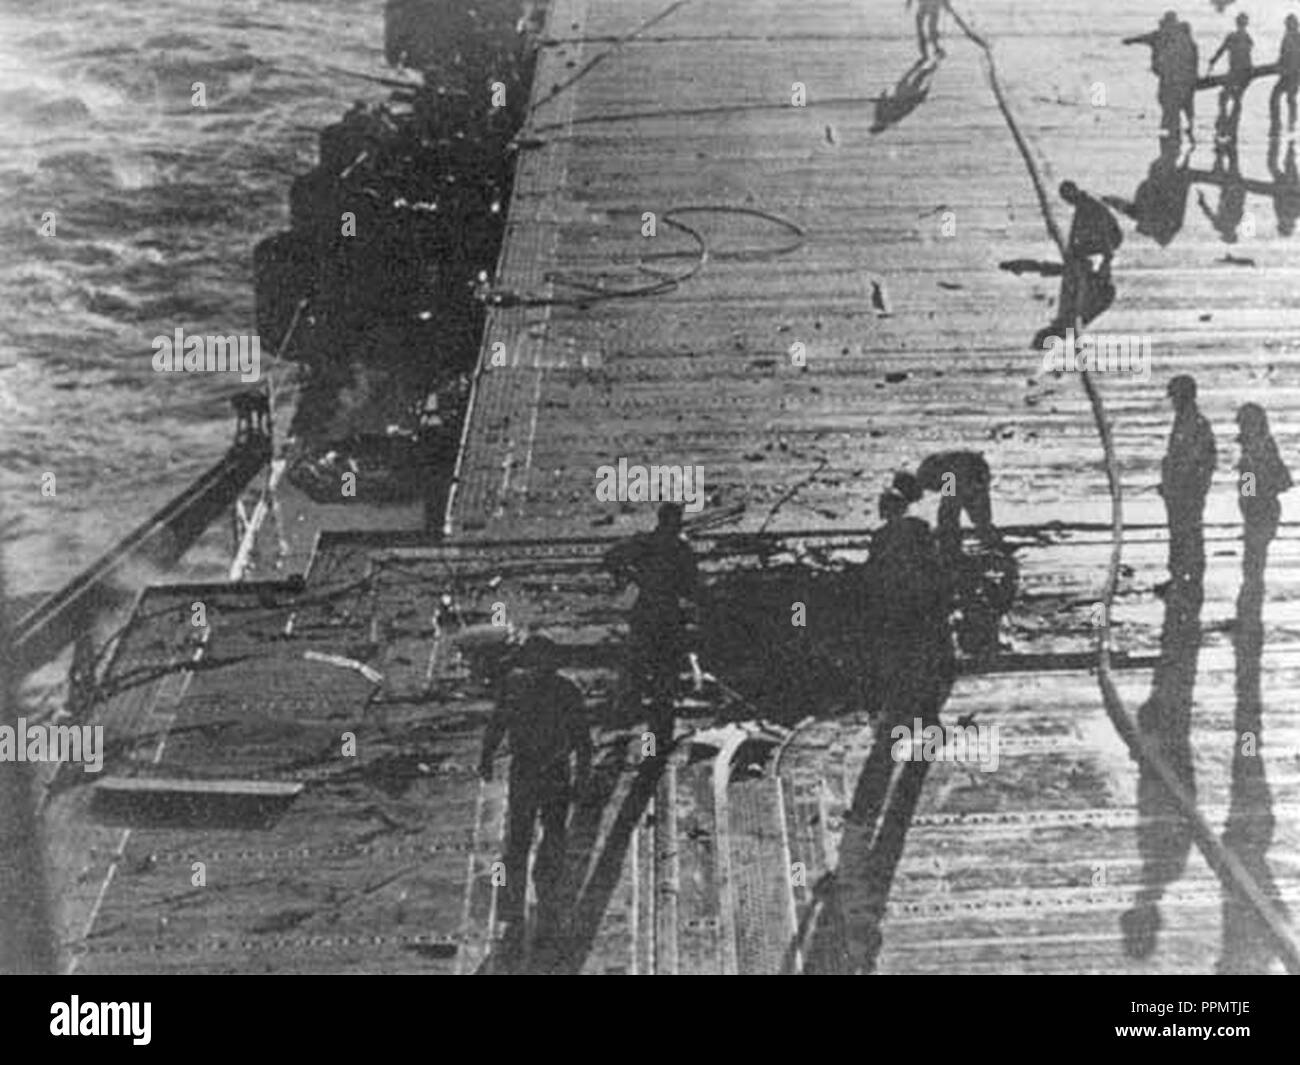 Dommages causés par les bombes sur le pont du USS Enterprise (CV-6) le 24 août 1942. Banque D'Images